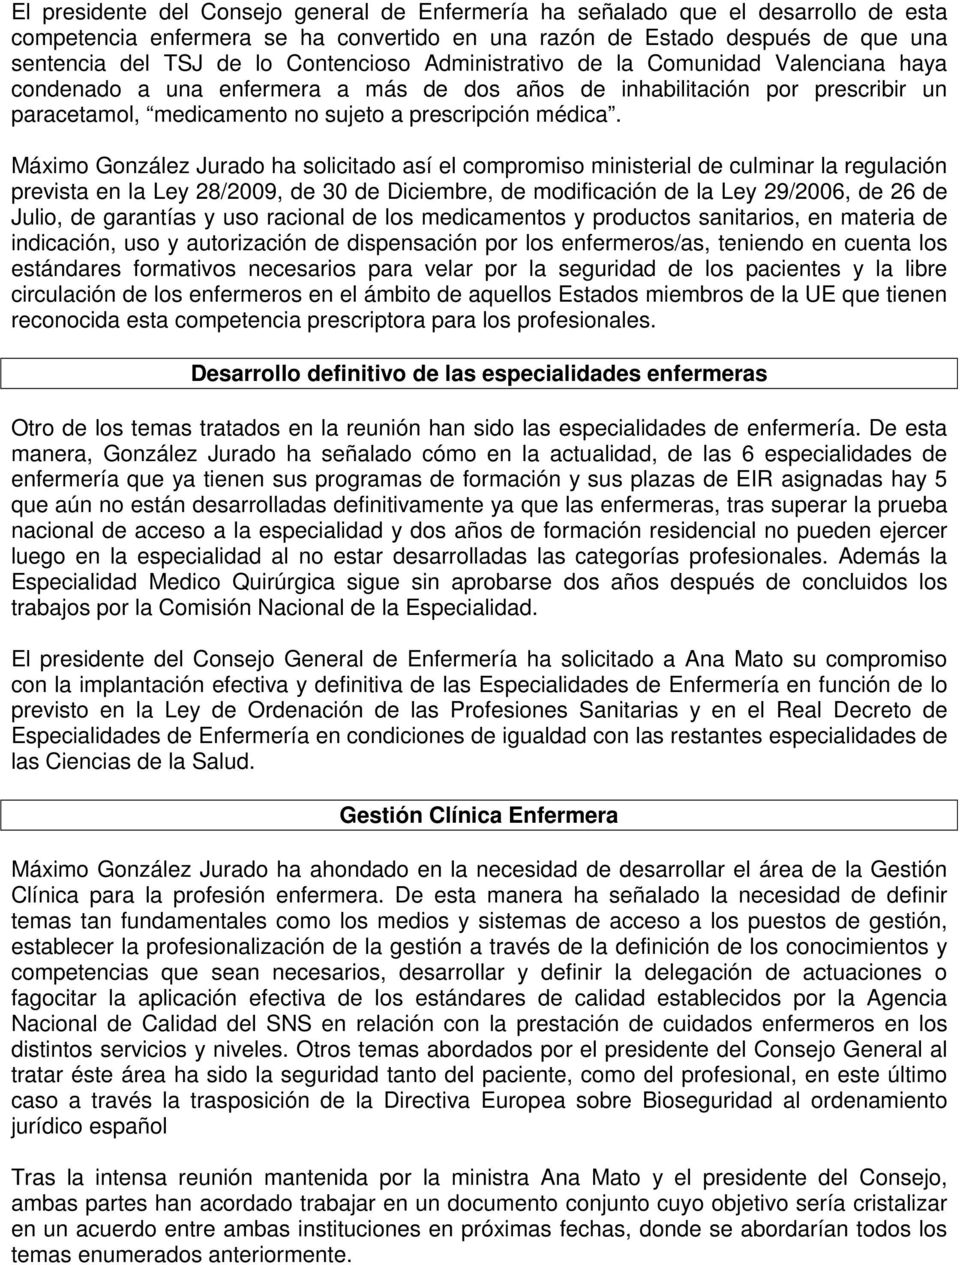 Máximo González Jurado ha solicitado así el compromiso ministerial de culminar la regulación prevista en la Ley 28/2009, de 30 de Diciembre, de modificación de la Ley 29/2006, de 26 de Julio, de